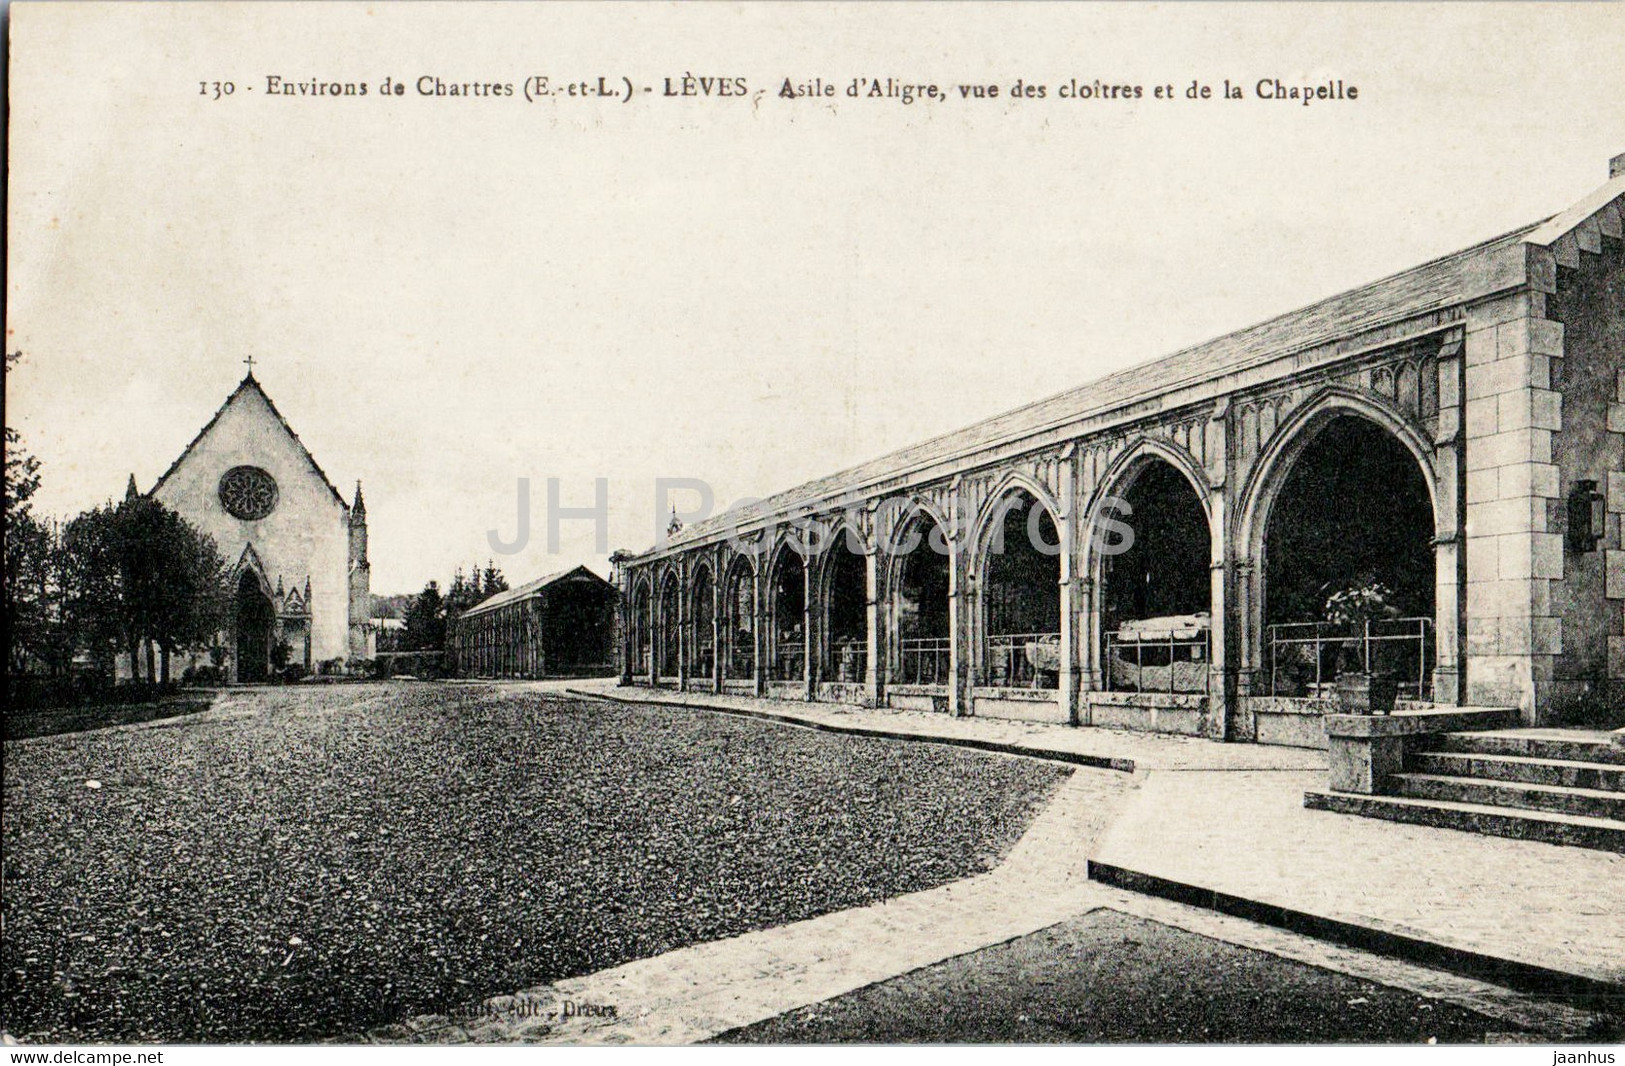 Leves - Asile D'Aligre Vue Des Cloitres Et De La Chapelle - 130 - Old Postcard - France - Unused - Lèves